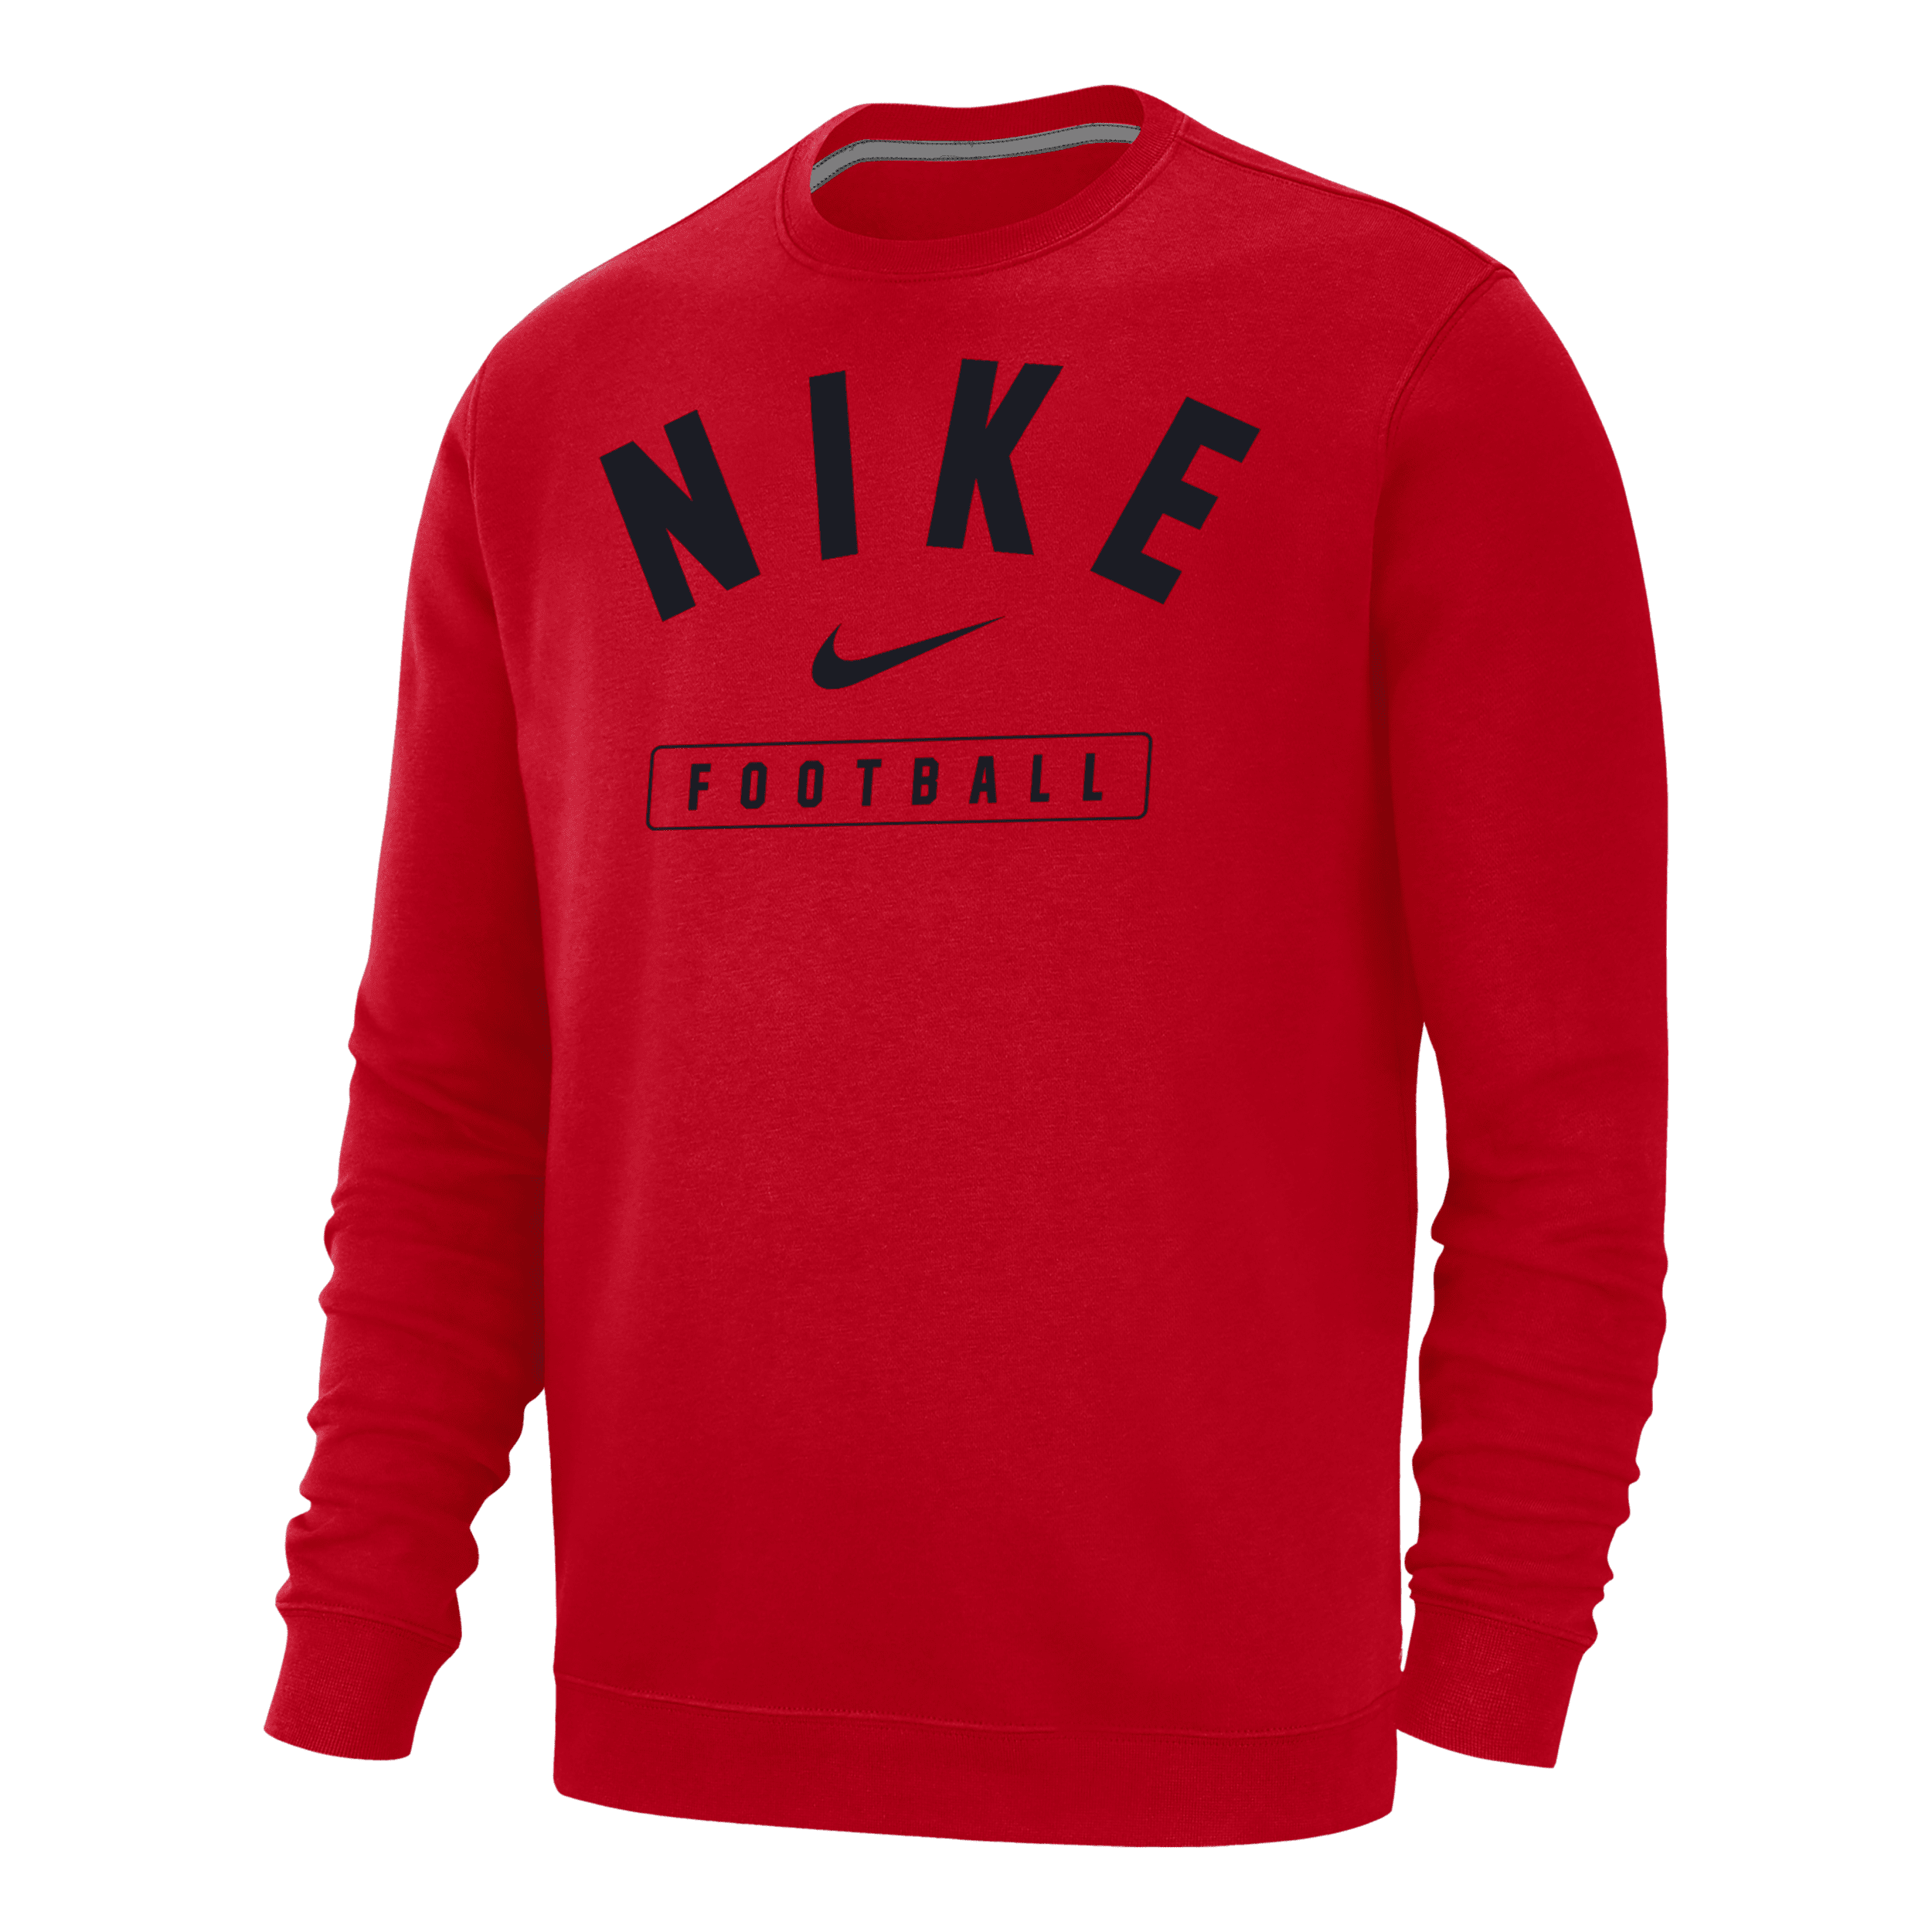 Nike Men's Football Crew-neck Sweatshirt In Red